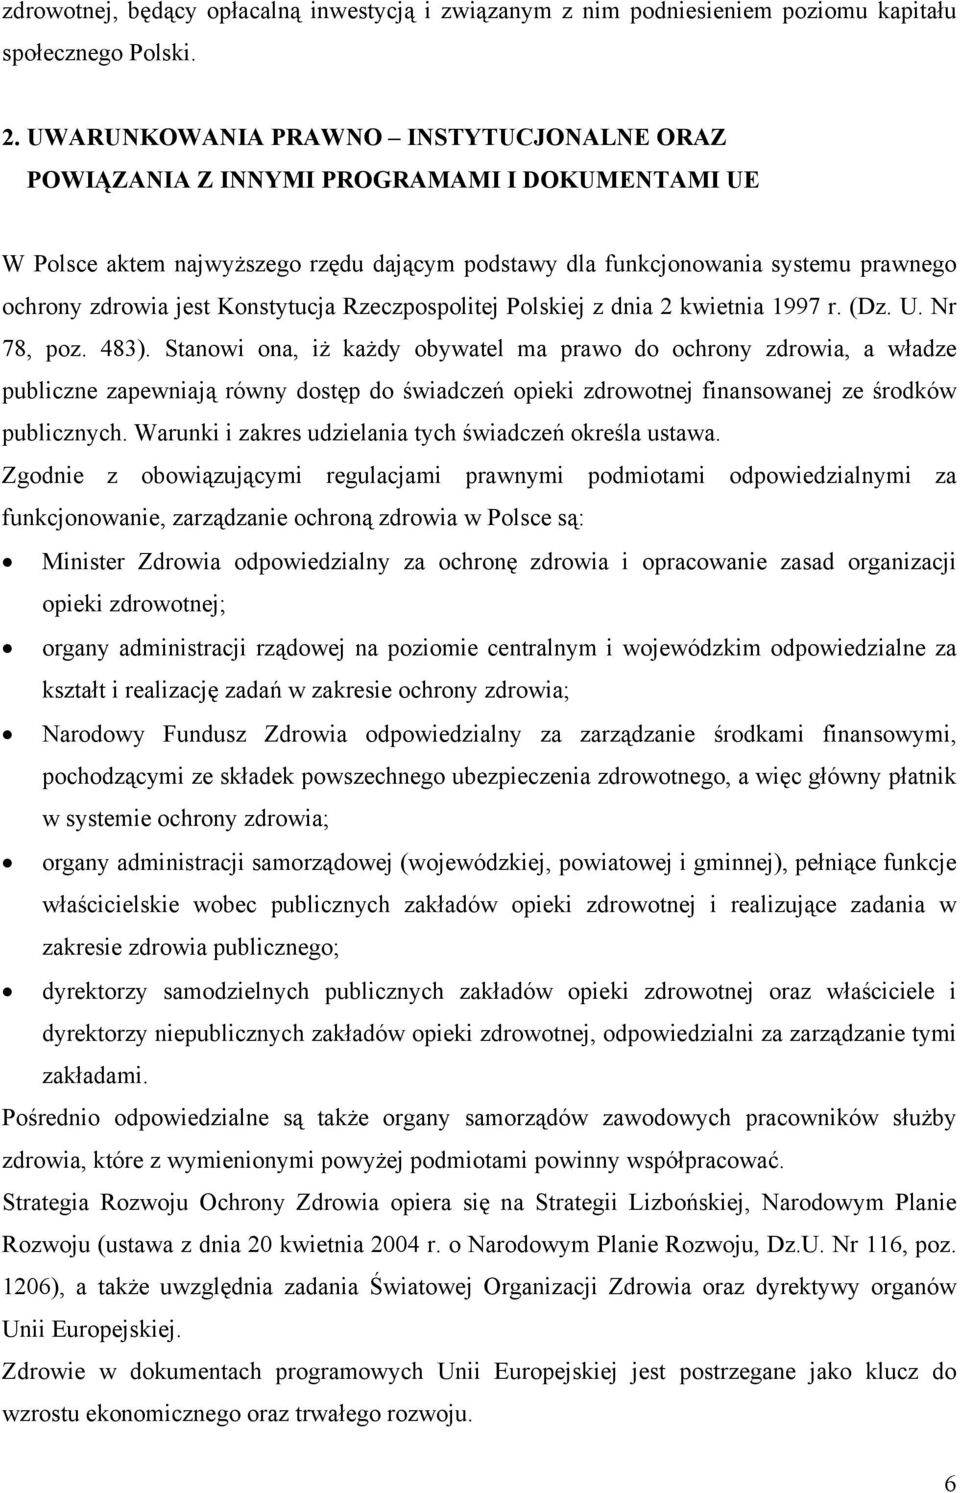 Konstytucja Rzeczpospolitej Polskiej z dnia 2 kwietnia 1997 r. (Dz. U. Nr 78, poz. 483).